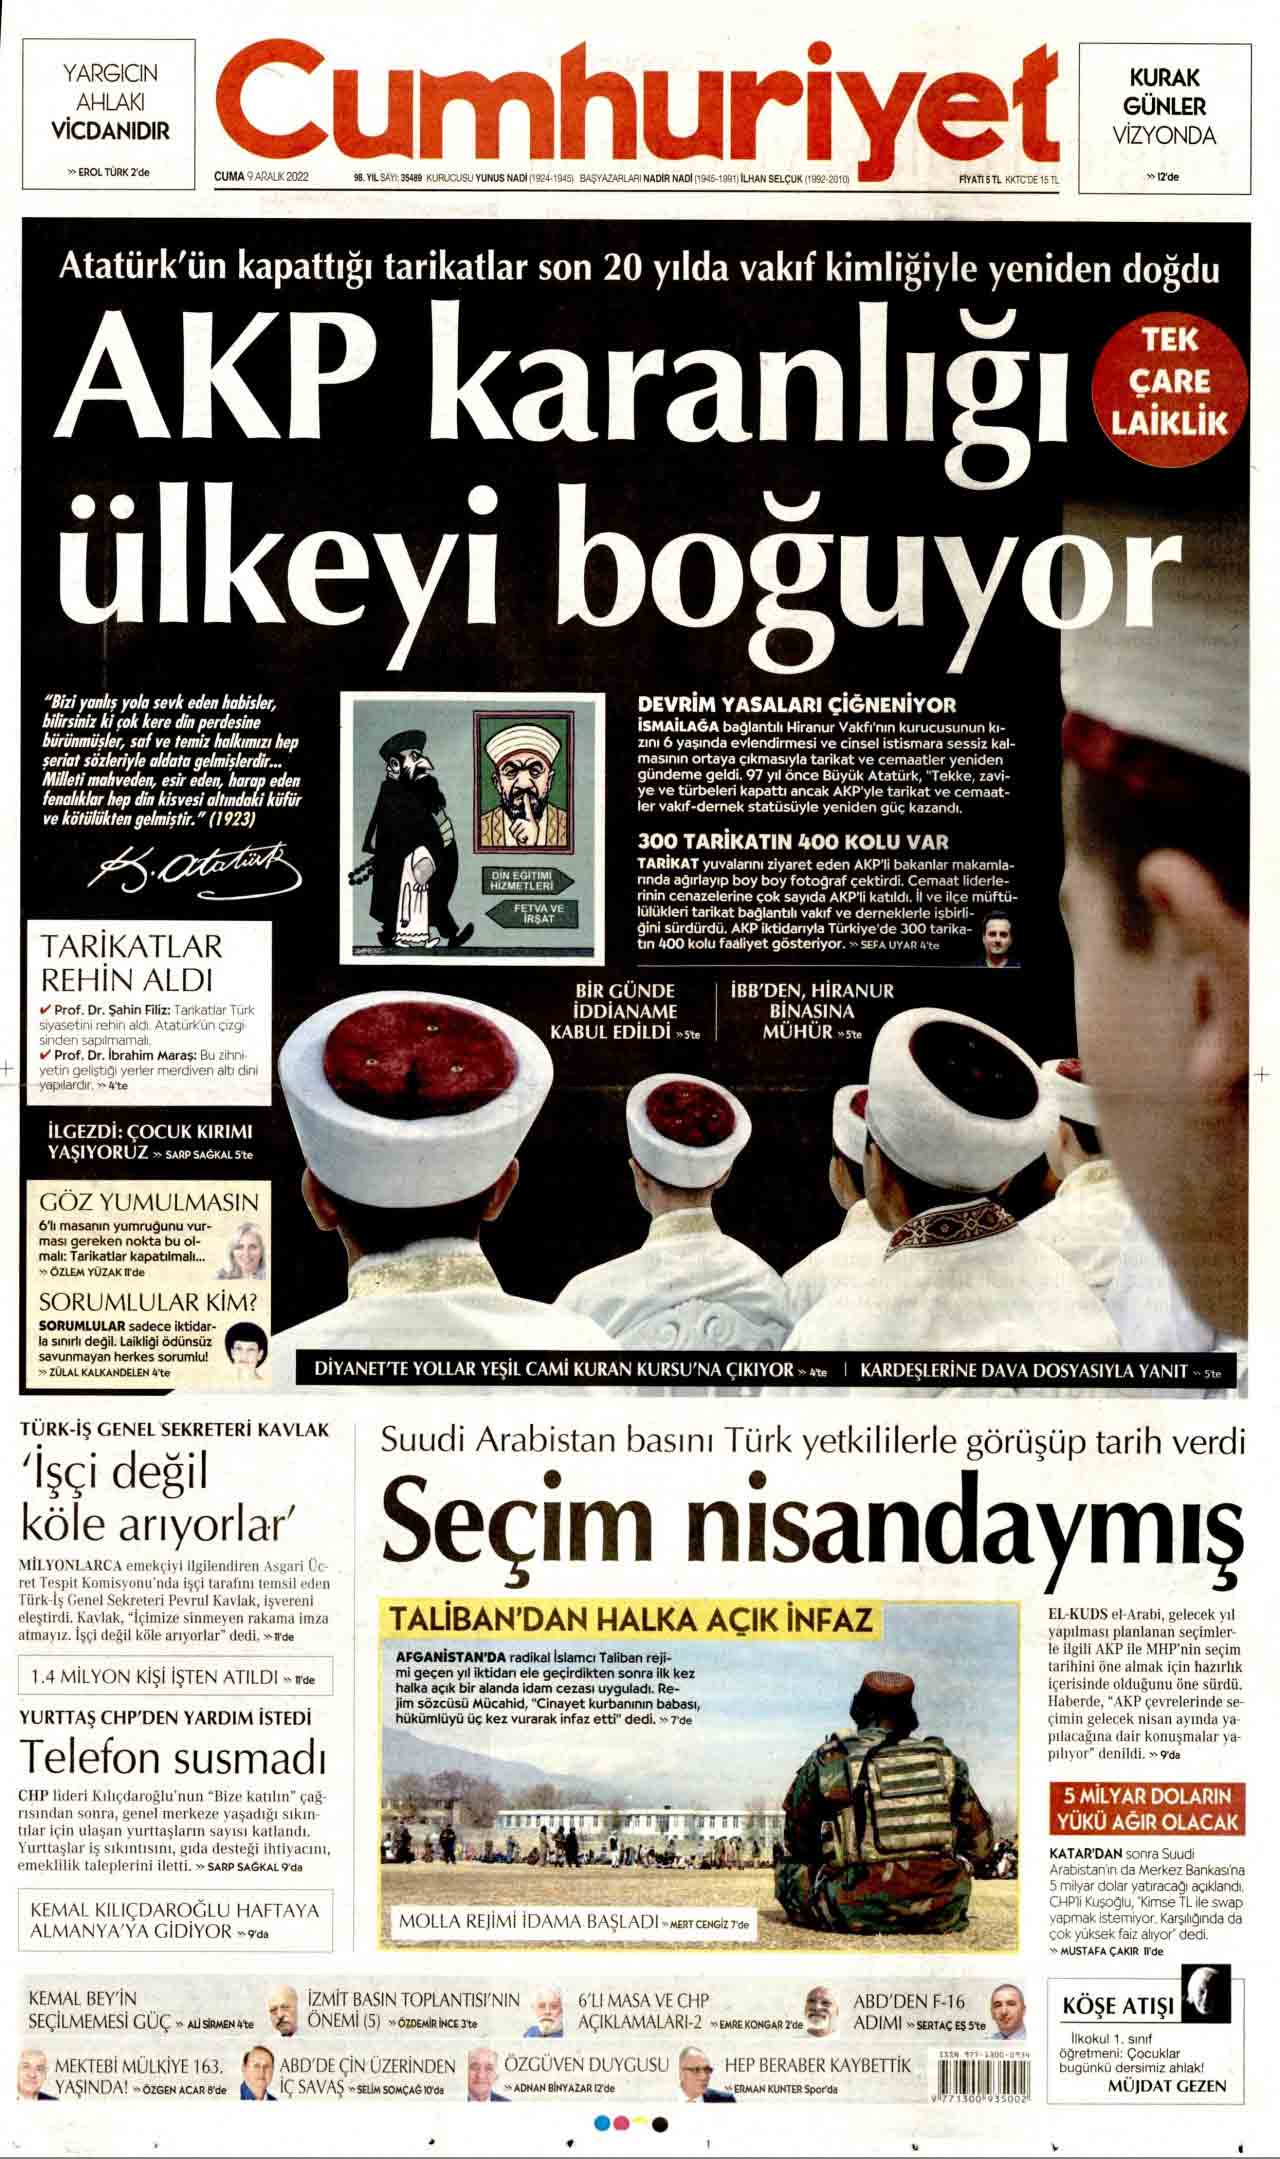 AKP, Cumhuriyet gazetesine 100 bin liralık tazminat davası açtı: "İtibar suikastı yapılıyor"